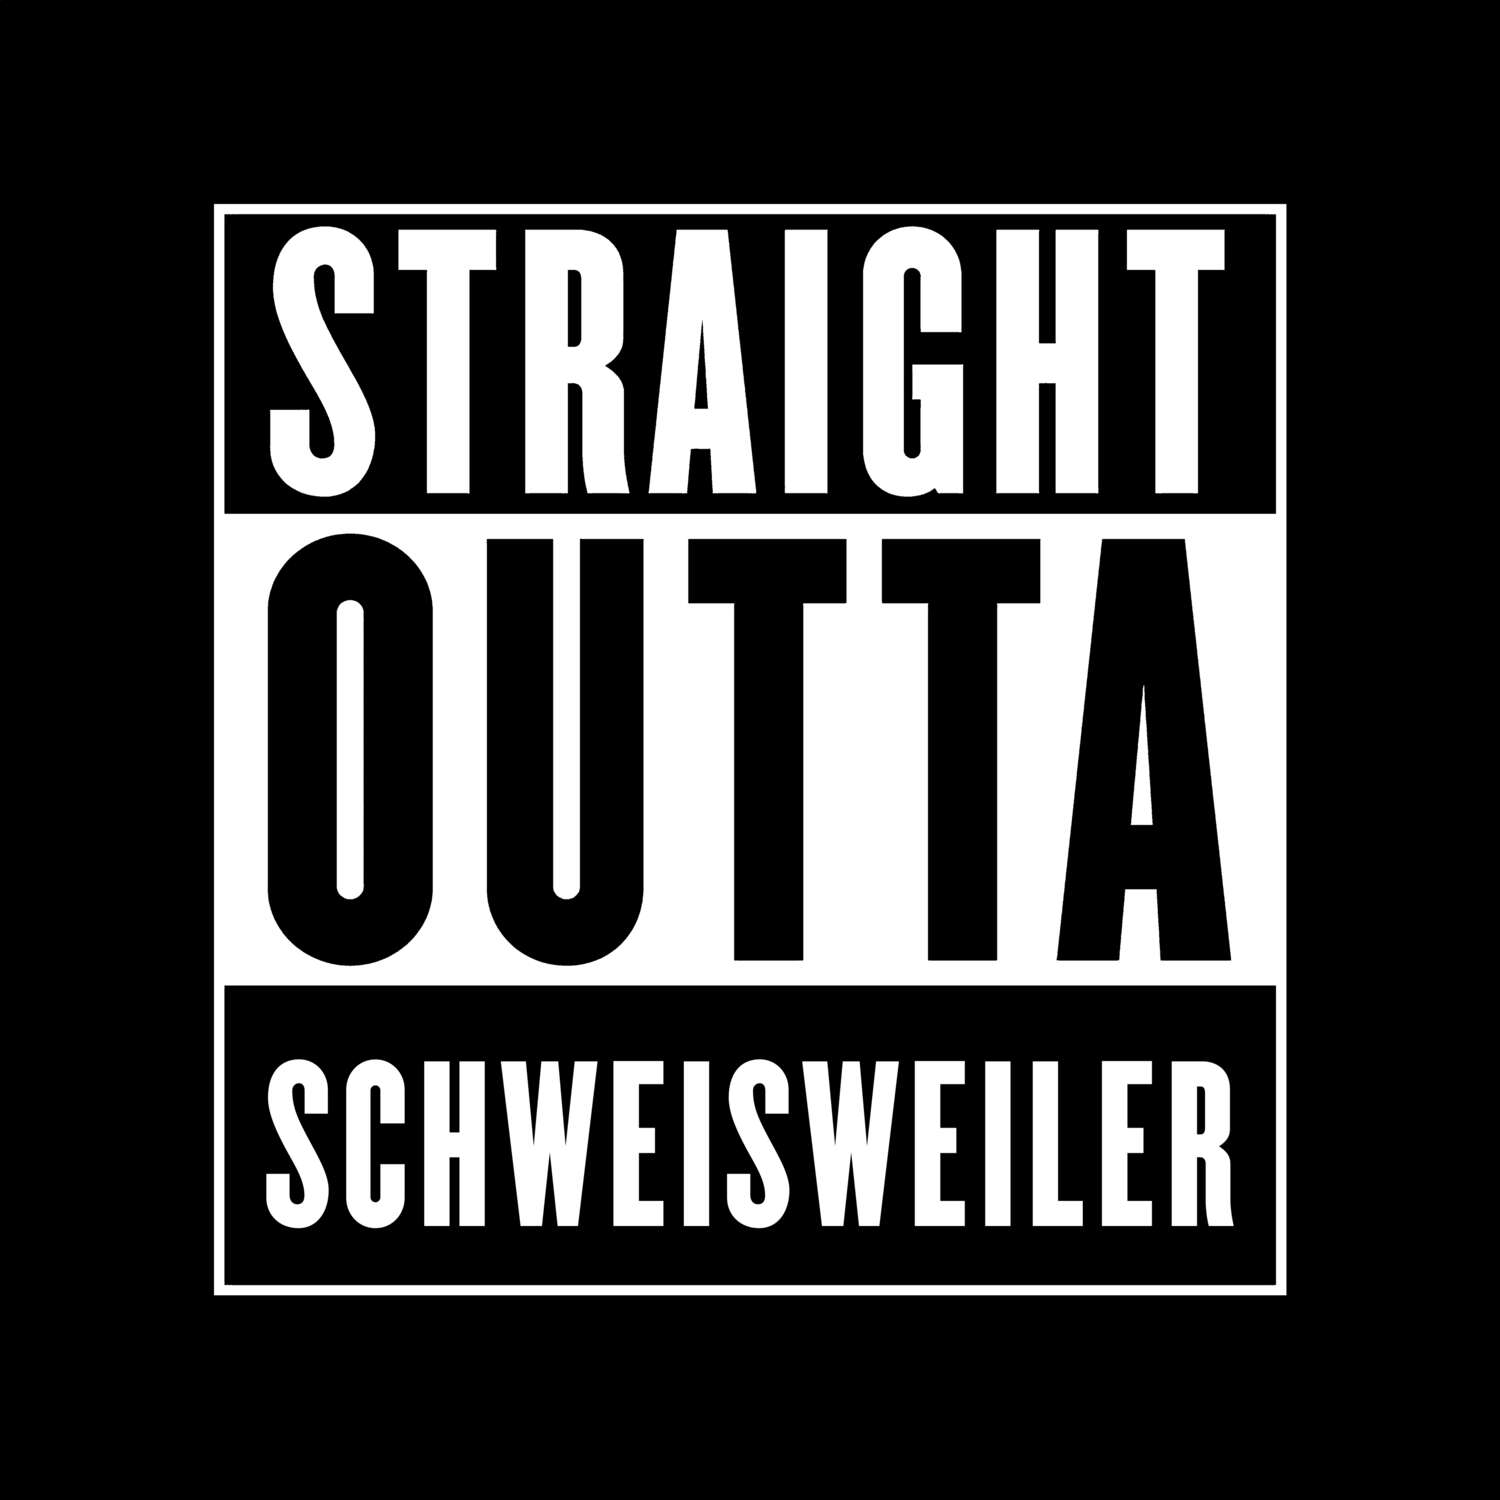 Schweisweiler T-Shirt »Straight Outta«